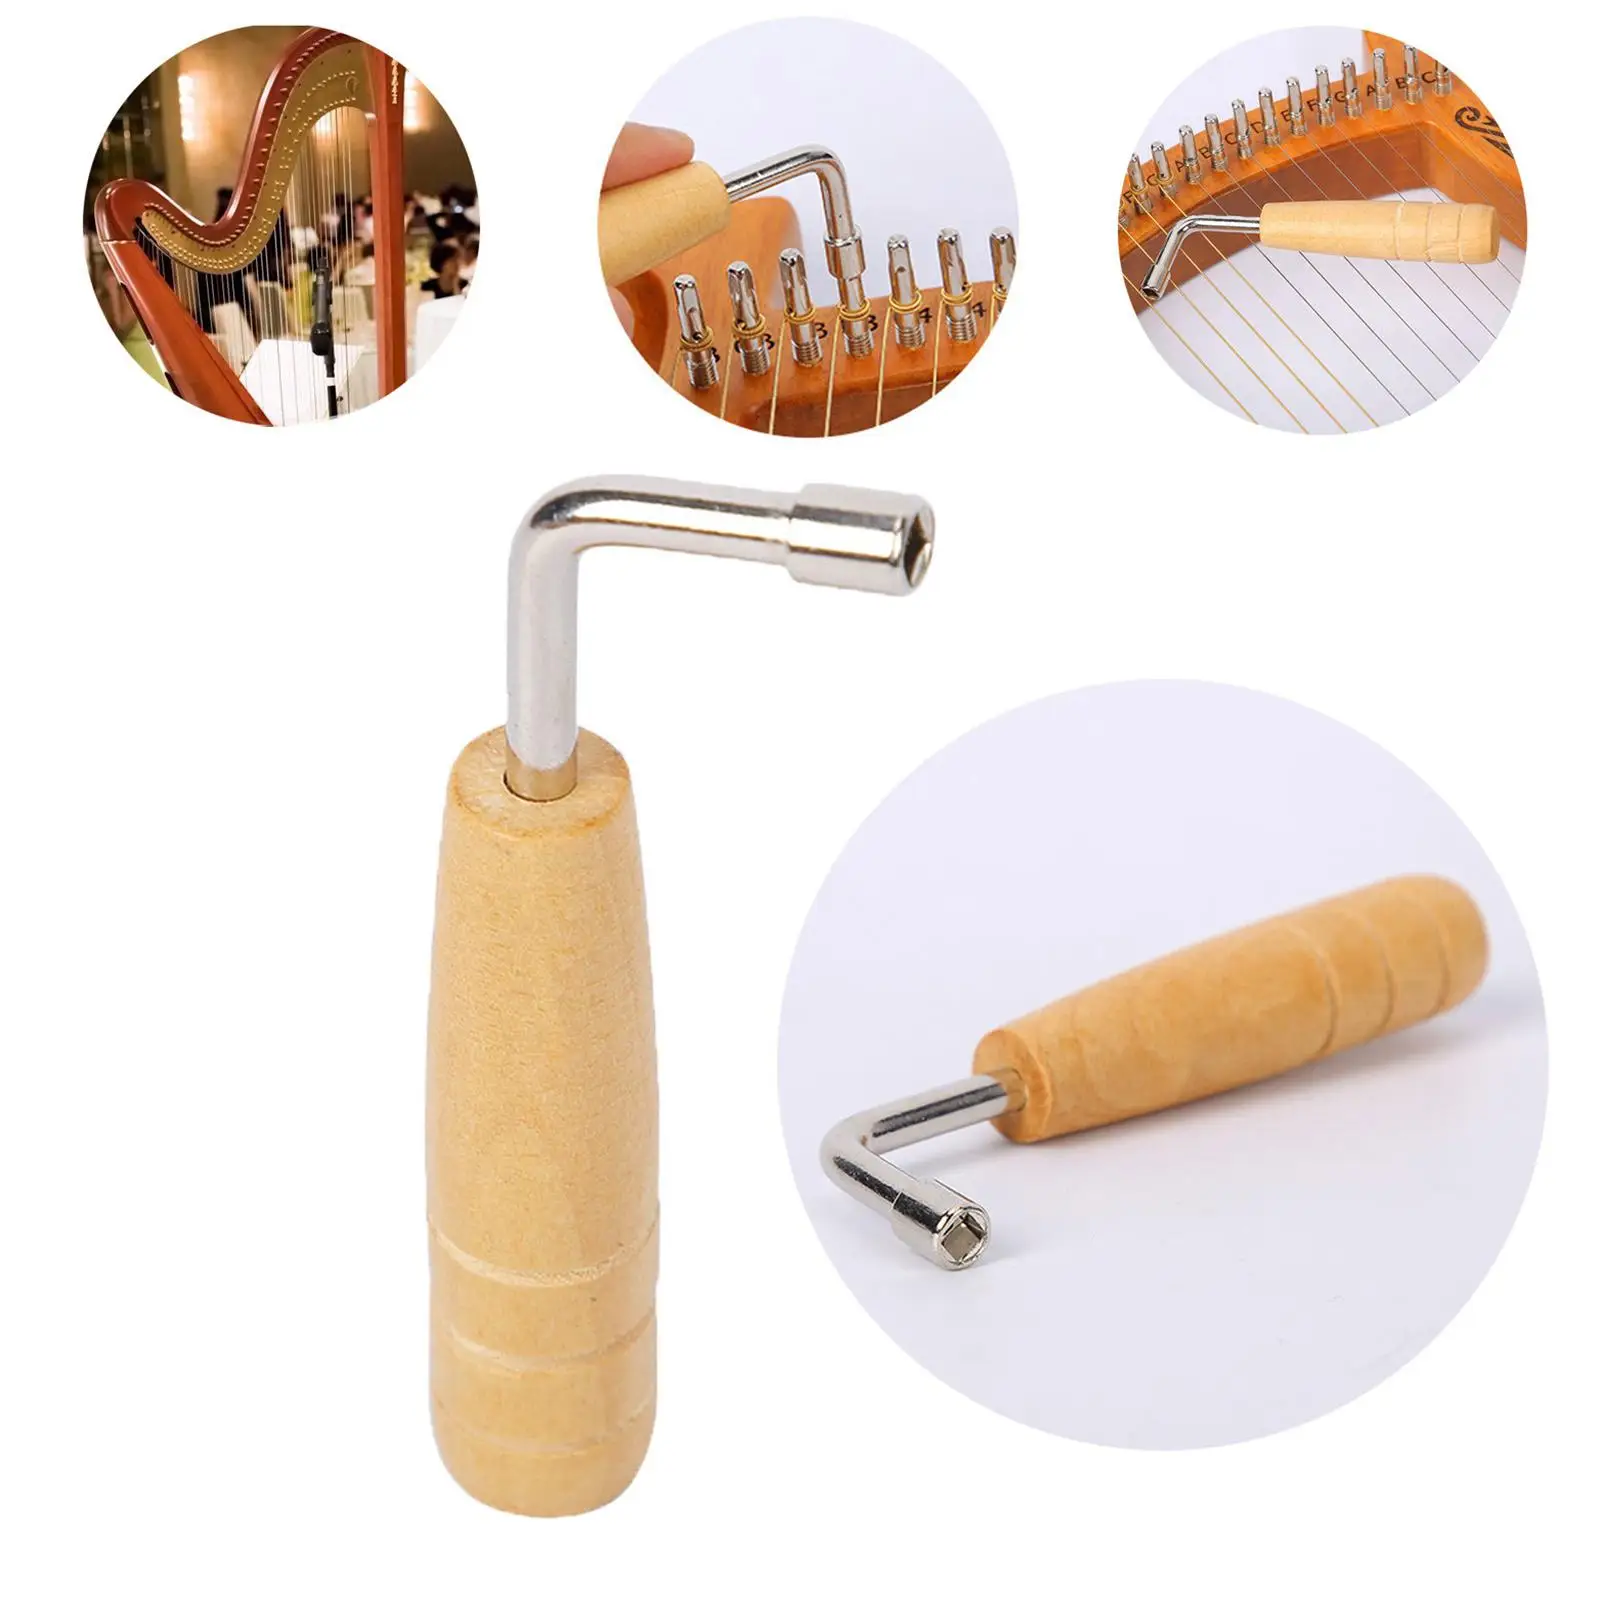 

Деревянный тюнинг-ключ Lyre и Harp гусиная шея, тюнинг-молоток, деревянная ручка, инструменты, прочный для тюнинга